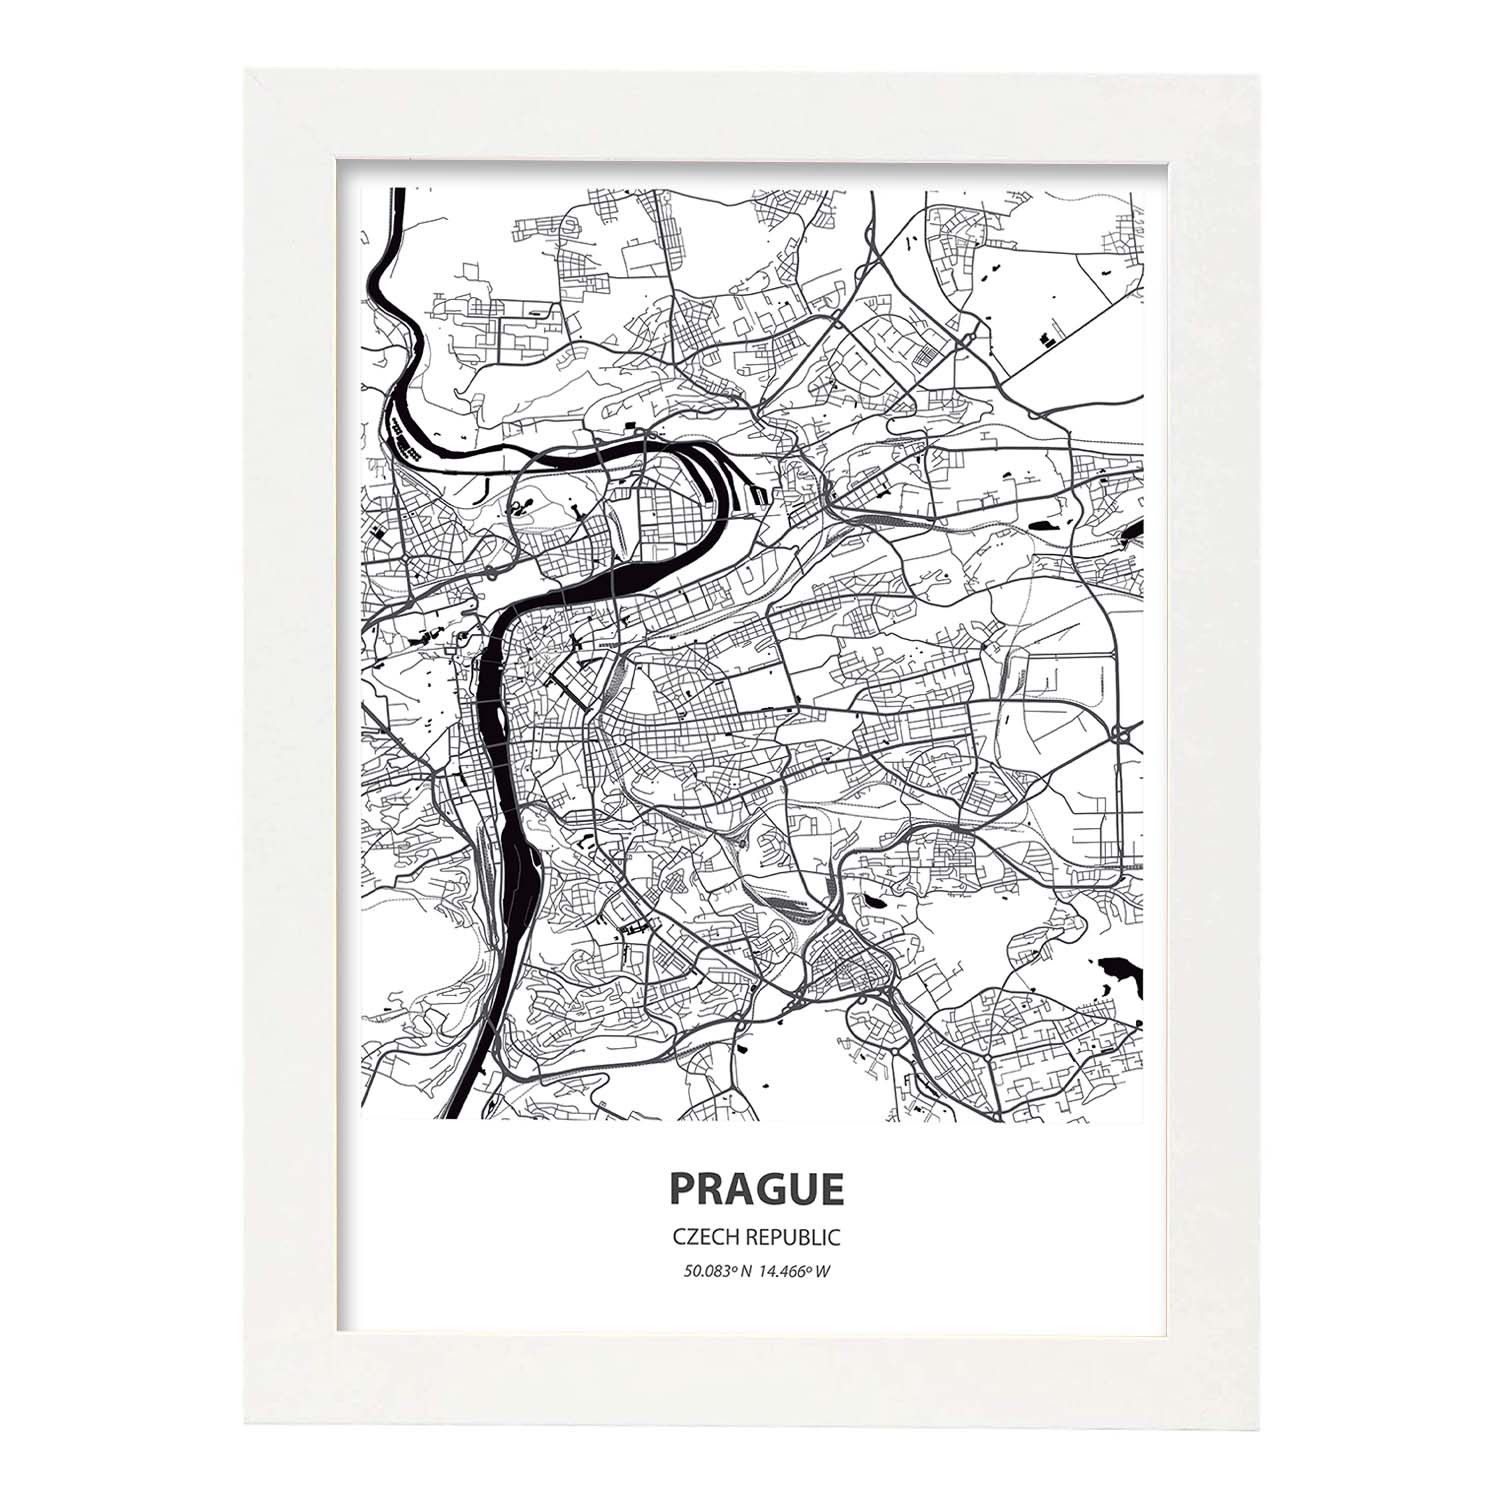 Poster con mapa de Prague - Republica Checa. Láminas de ciudades de Europa con mares y ríos en color negro.-Artwork-Nacnic-A3-Marco Blanco-Nacnic Estudio SL